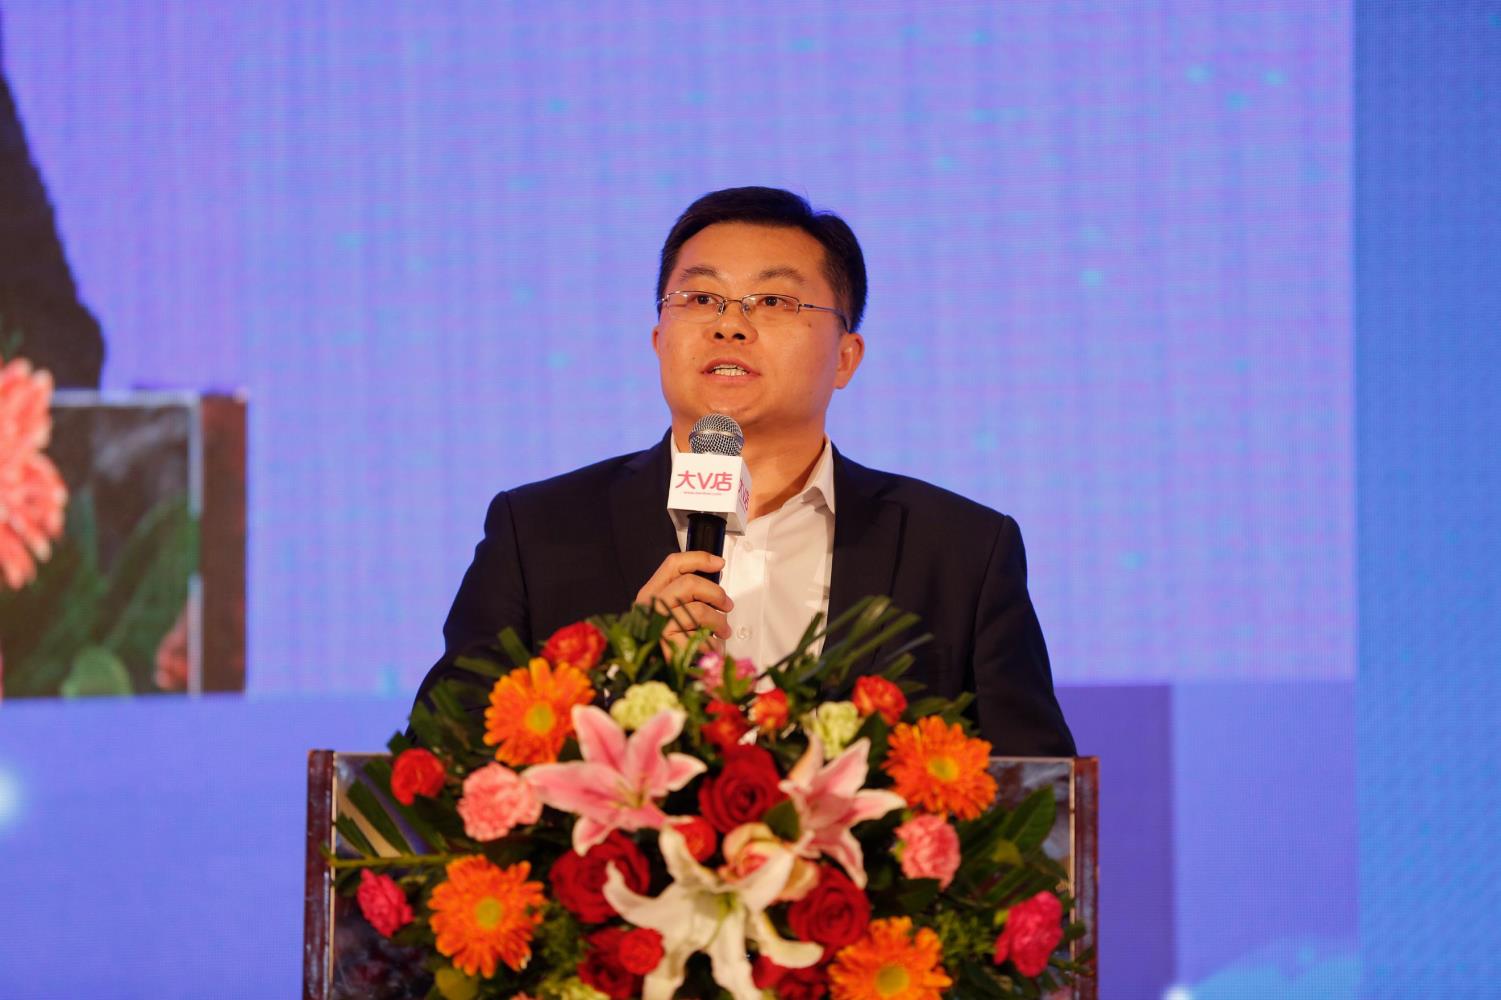 王志庚出席2017中国阅读与儿童教育高峰论坛发表主题演讲